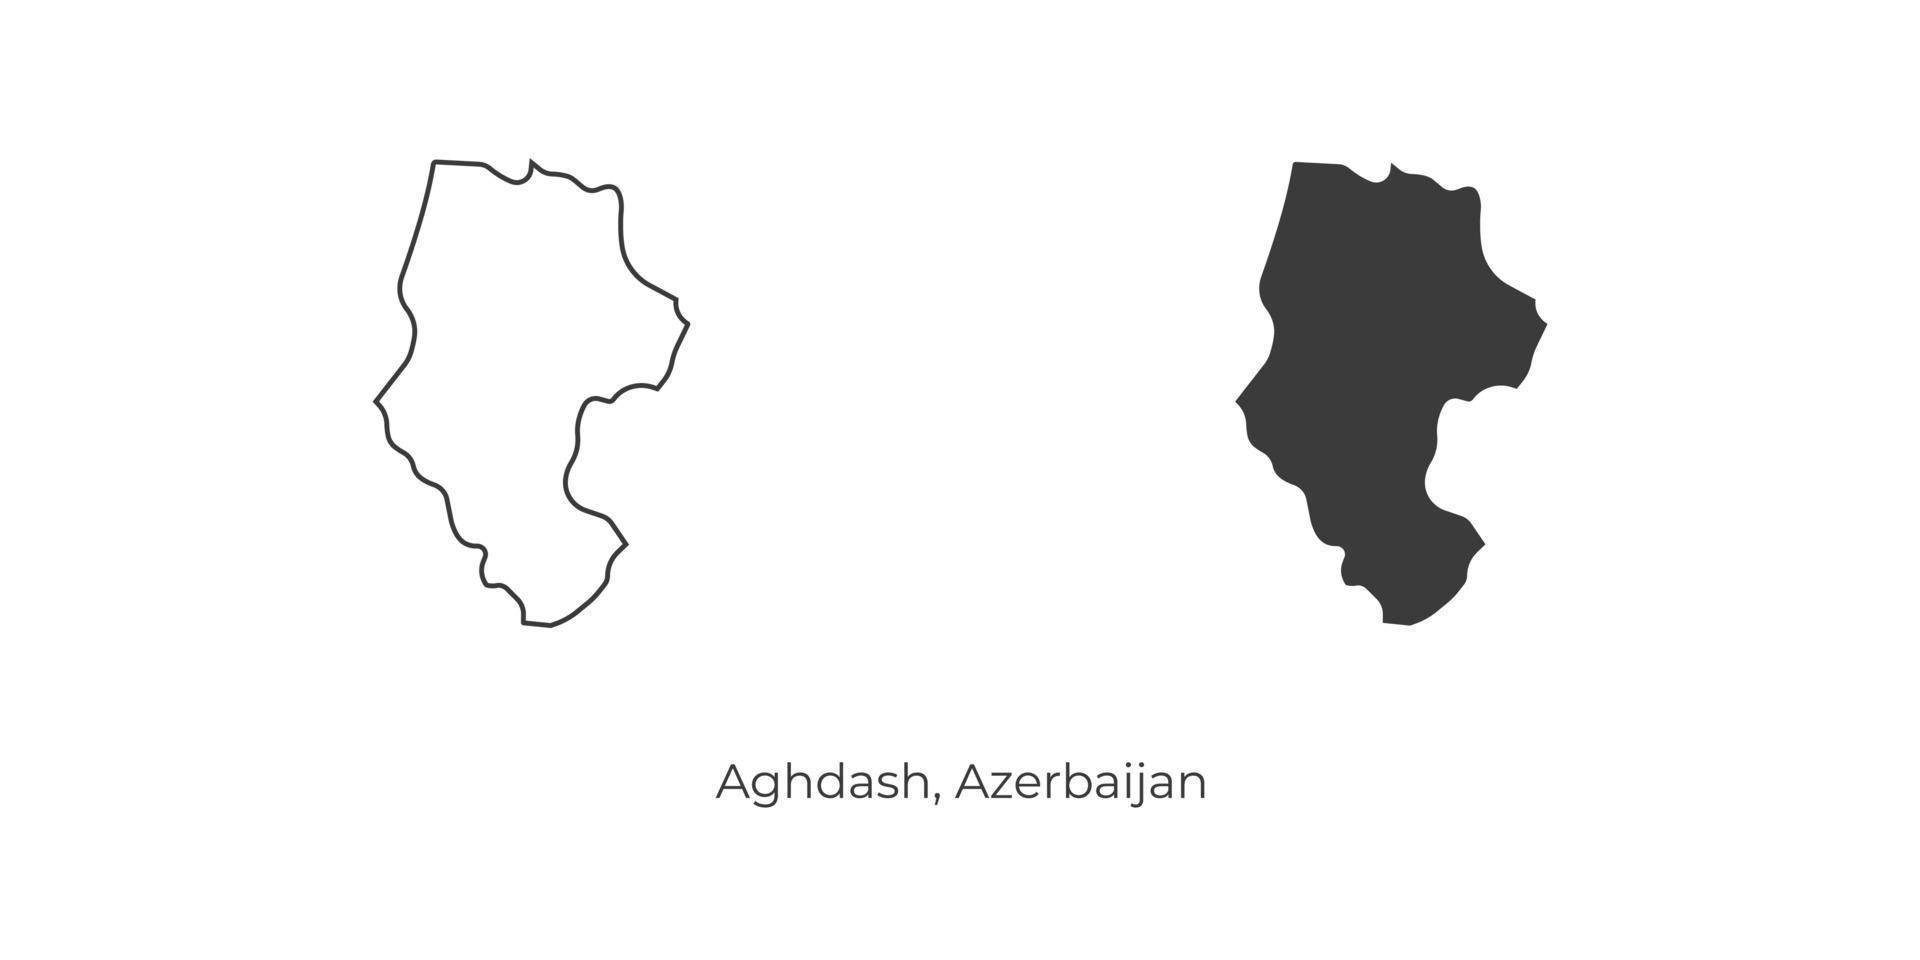 ilustração em vetor simples do mapa aghdash, azerbaijão.